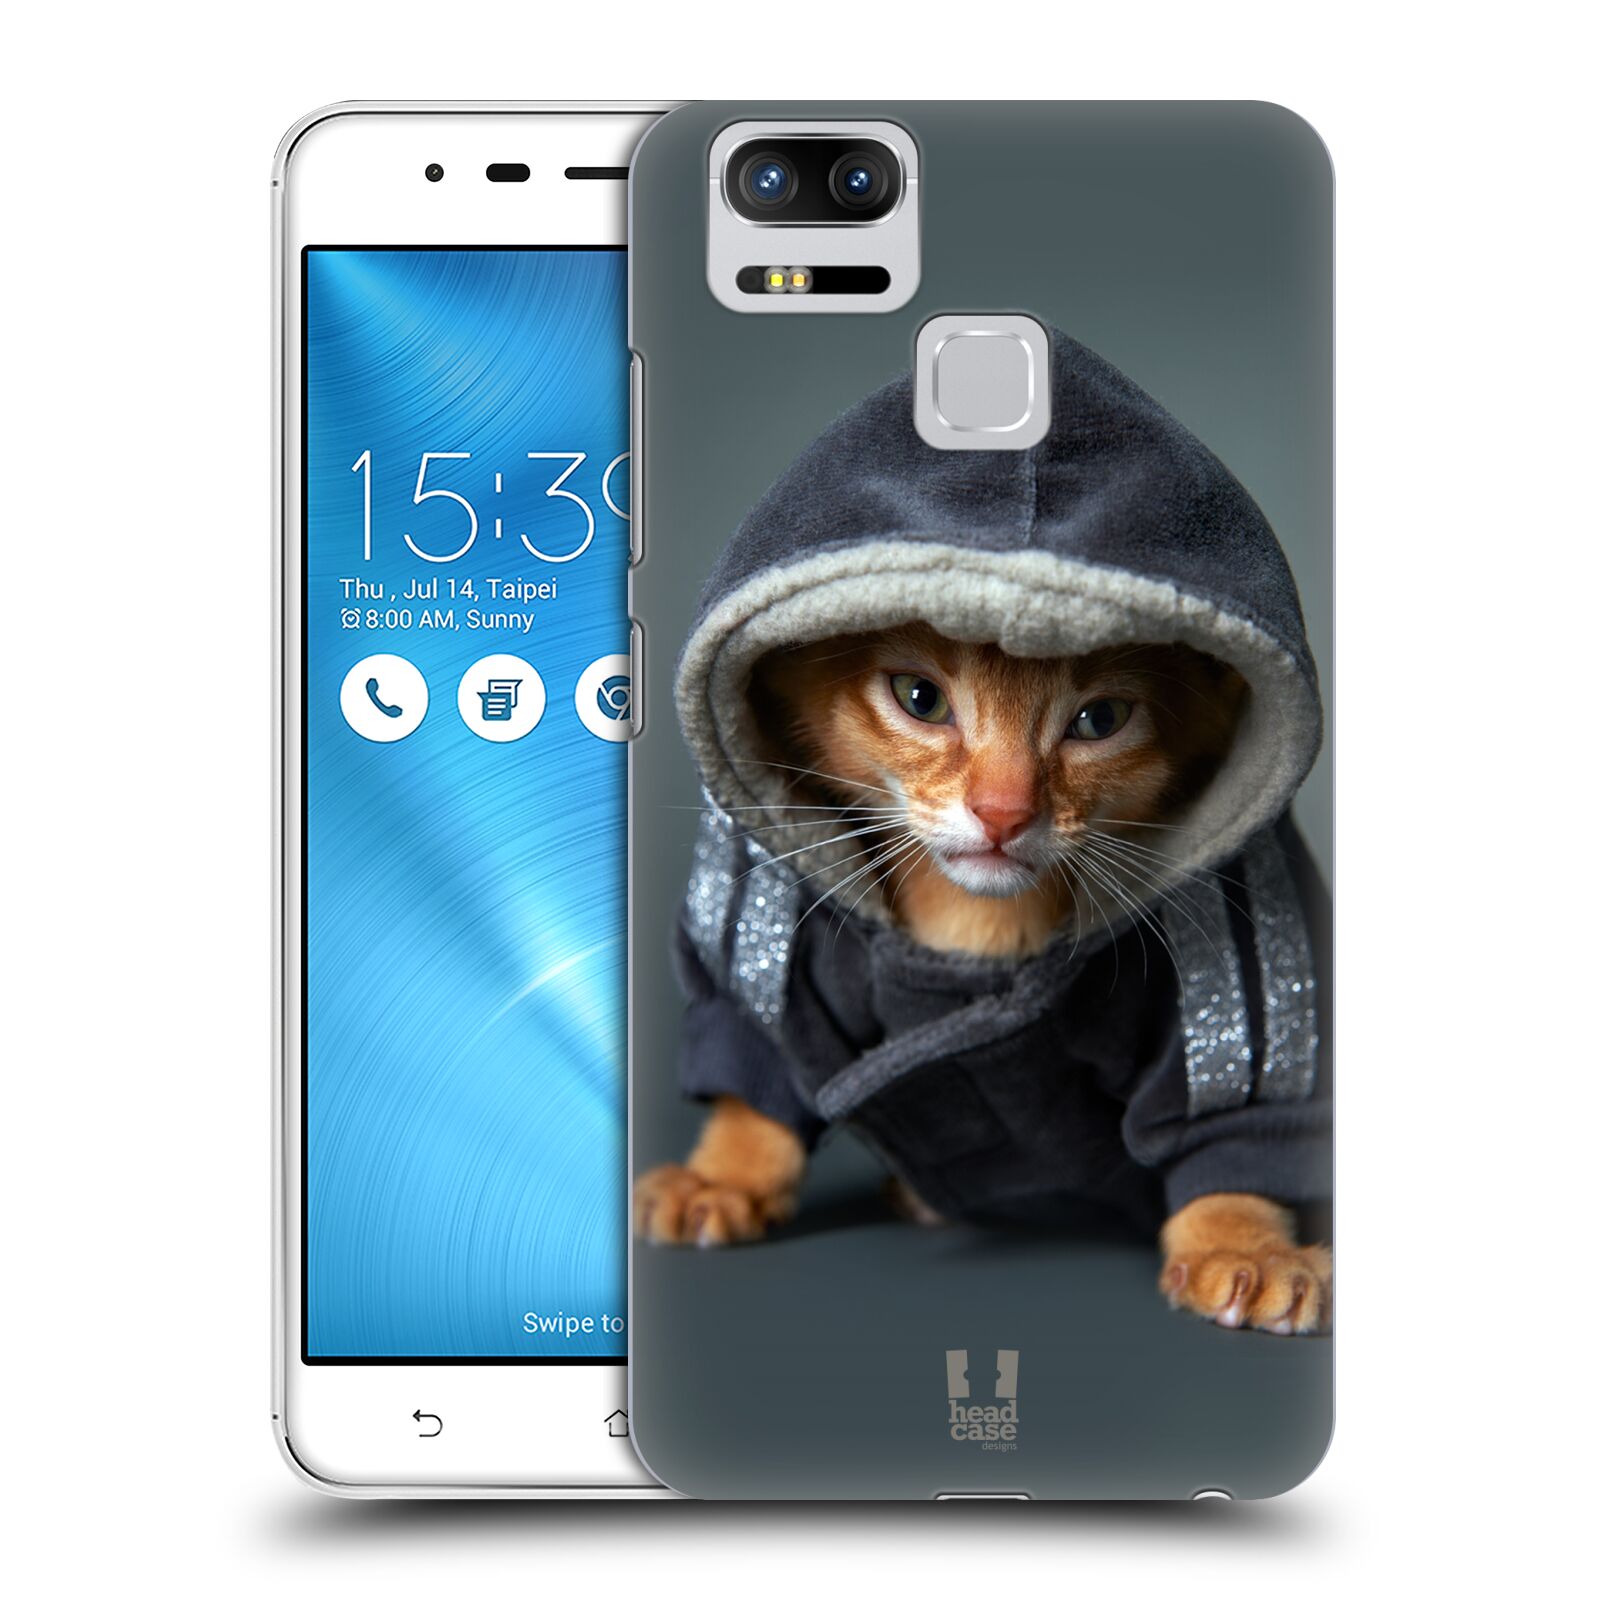 HEAD CASE plastový obal na mobil Asus Zenfone 3 Zoom ZE553KL vzor Legrační zvířátka kotě/kočička s kapucí